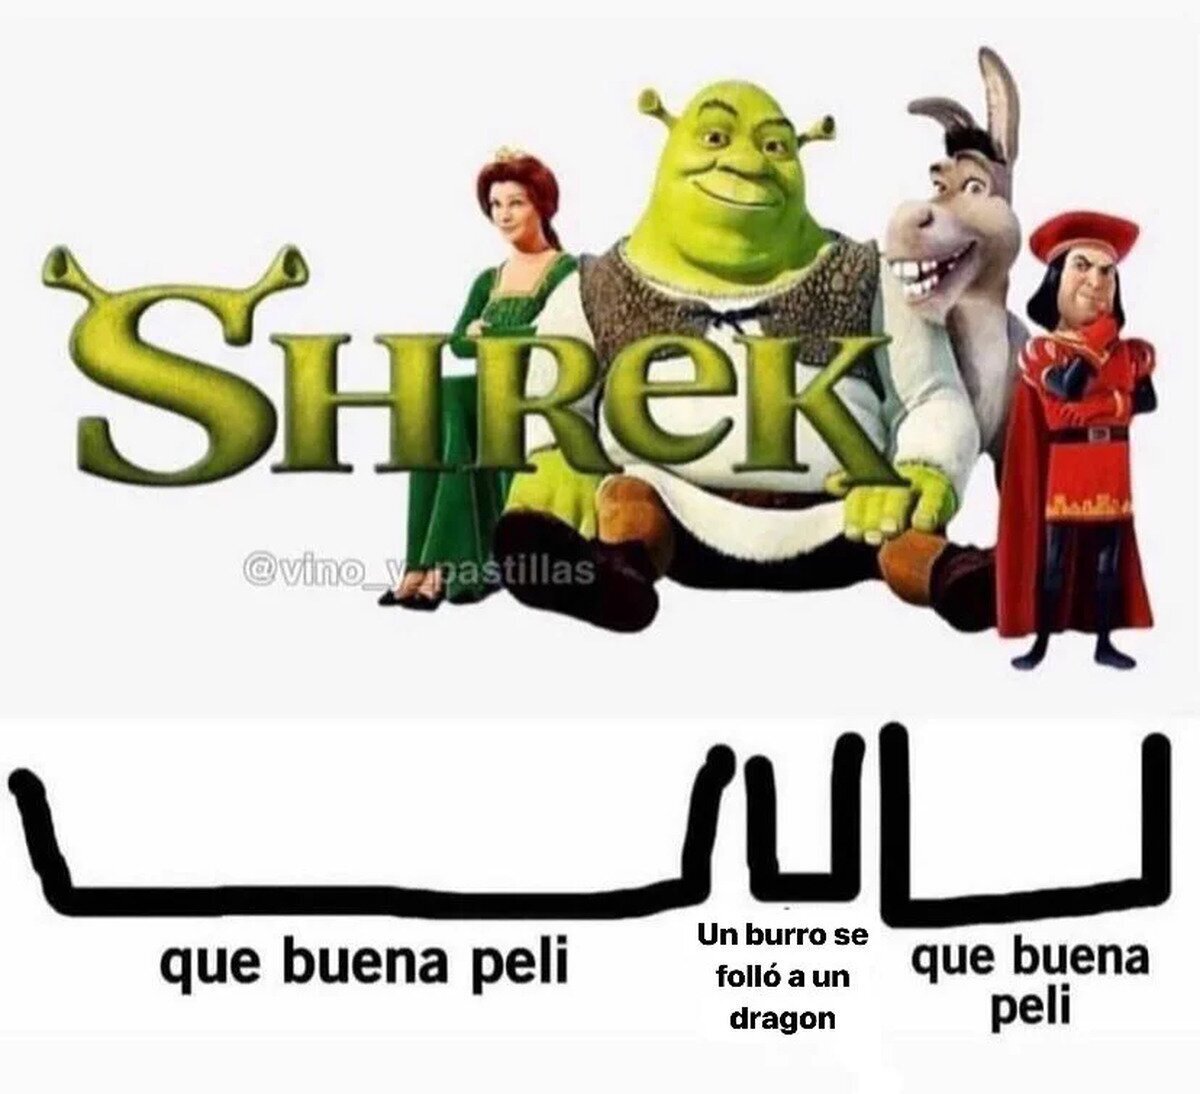 Mi opinión de Shrek